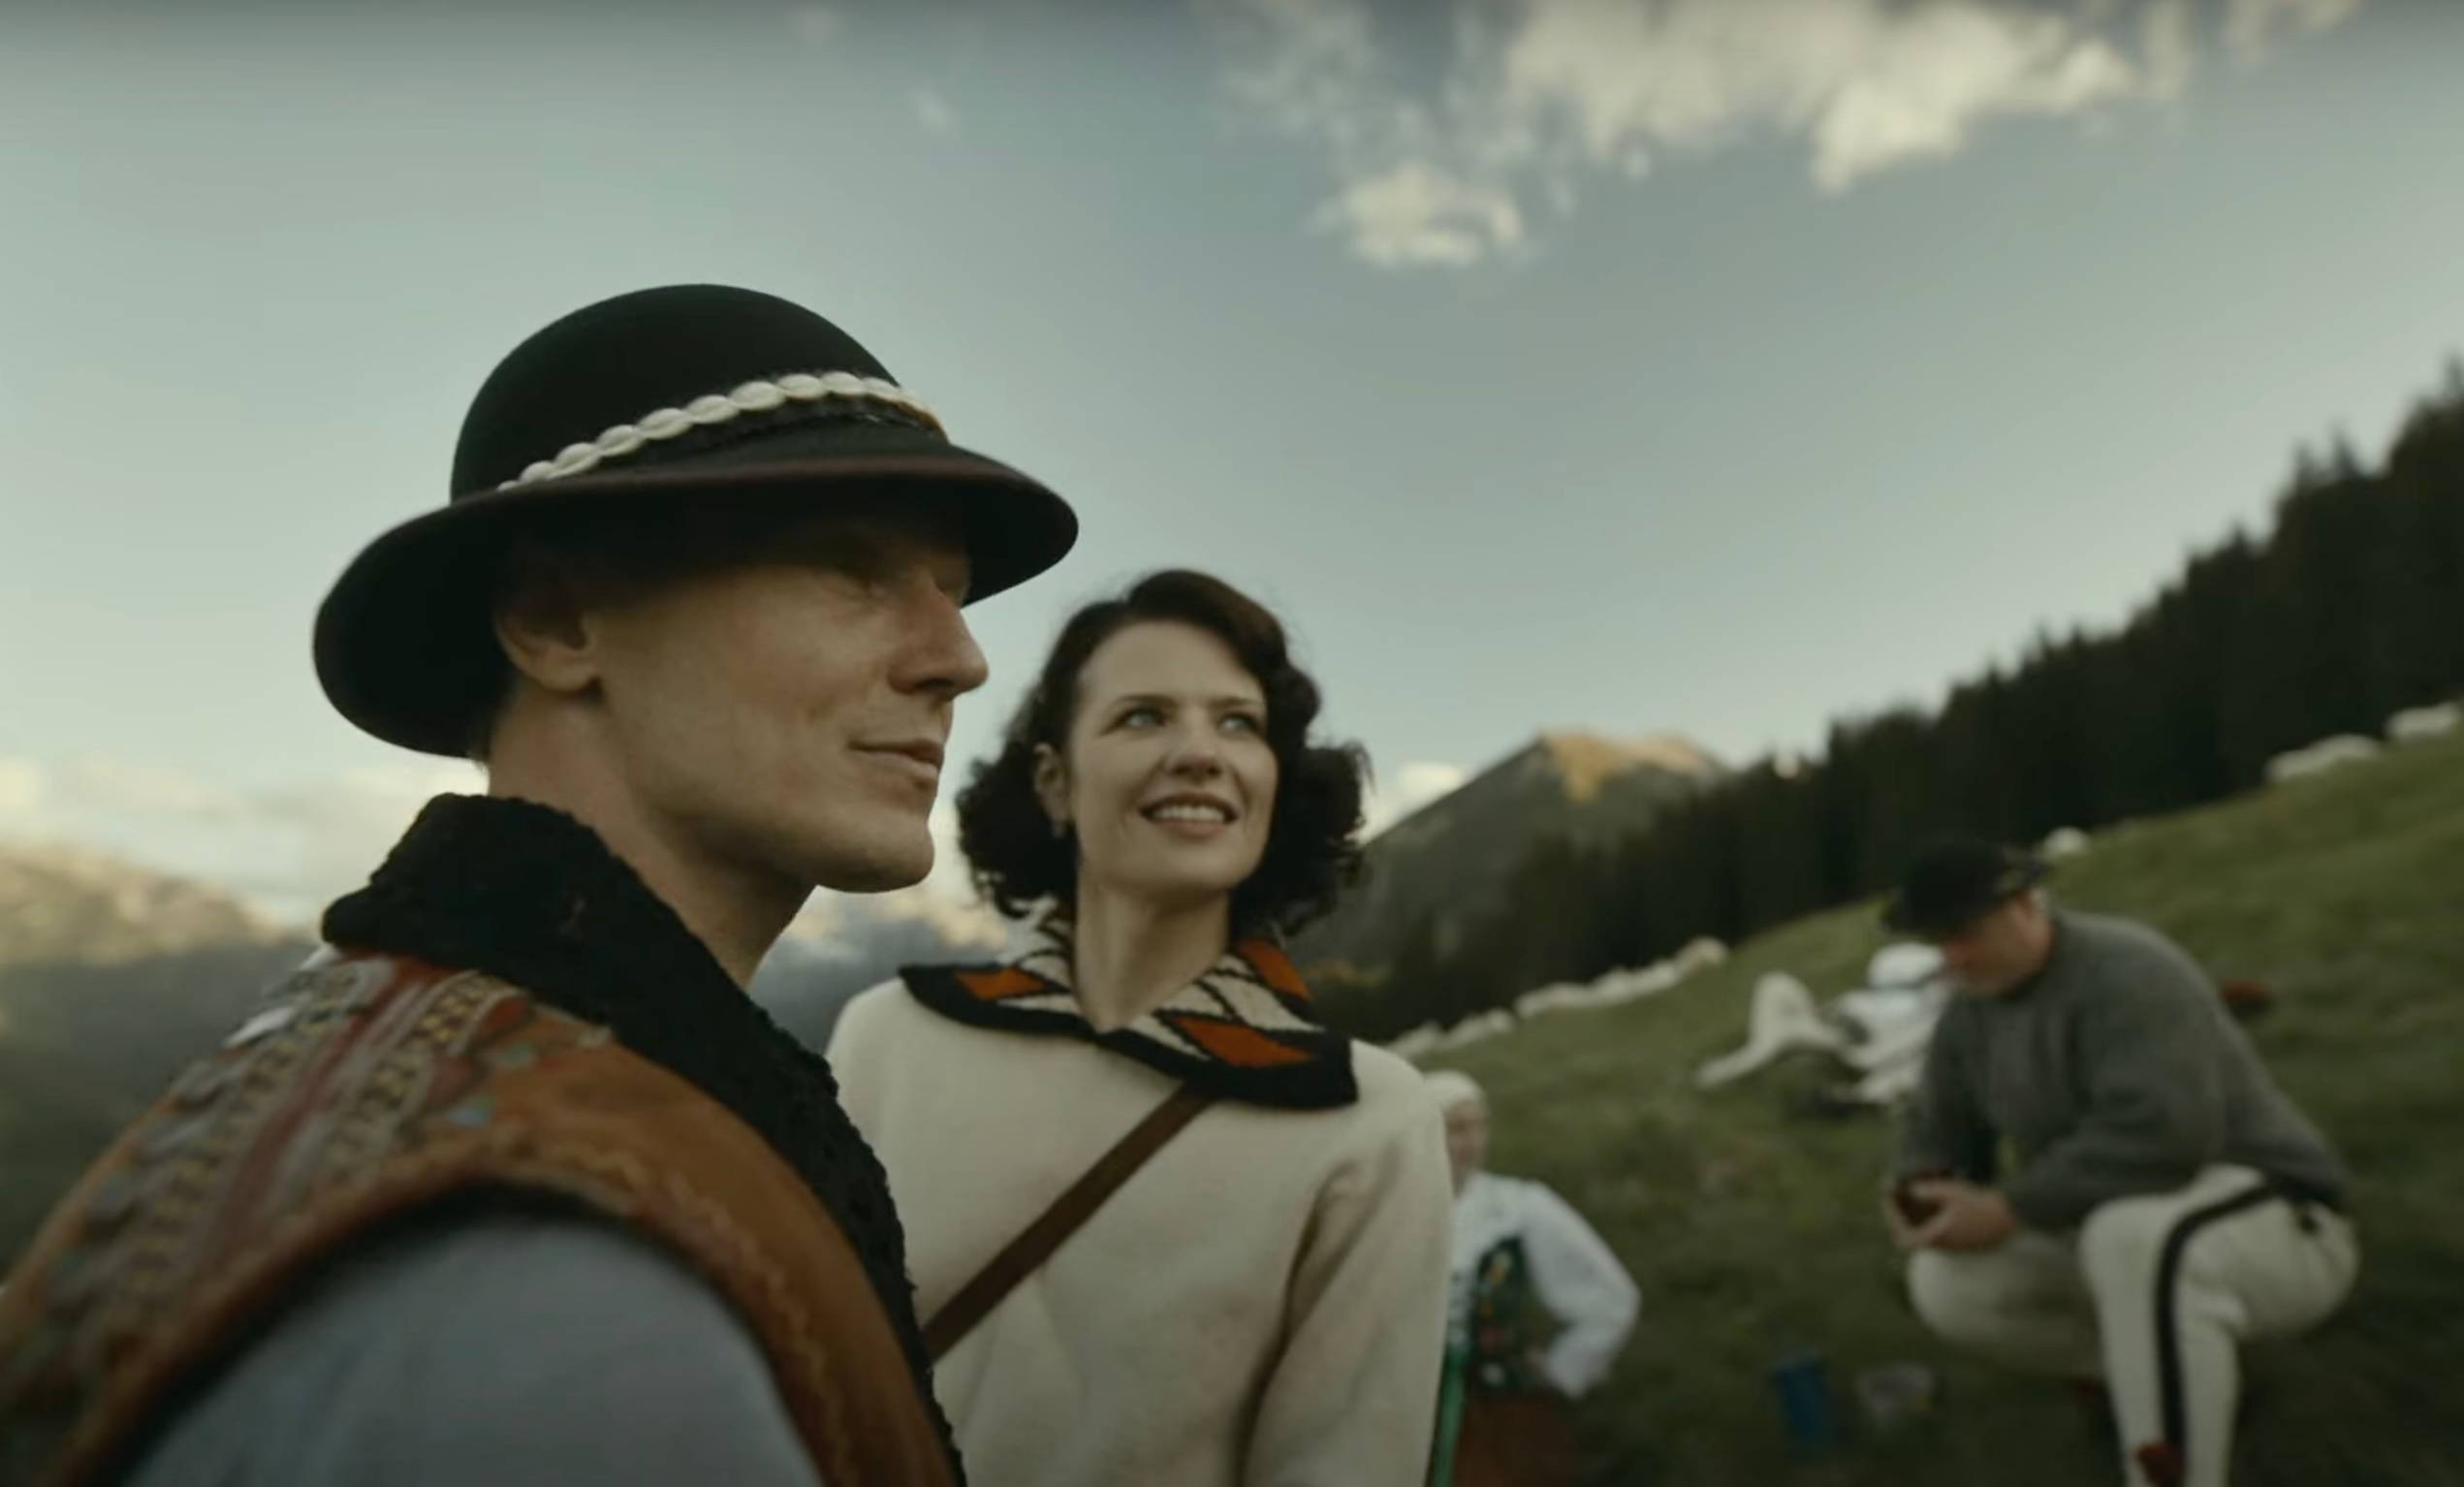 Mężczyzna w góralskim stroju i kobieta stoją na hali w Tatrach. Za nimi widać górala wypasającego owce. Film „Biała odwaga”